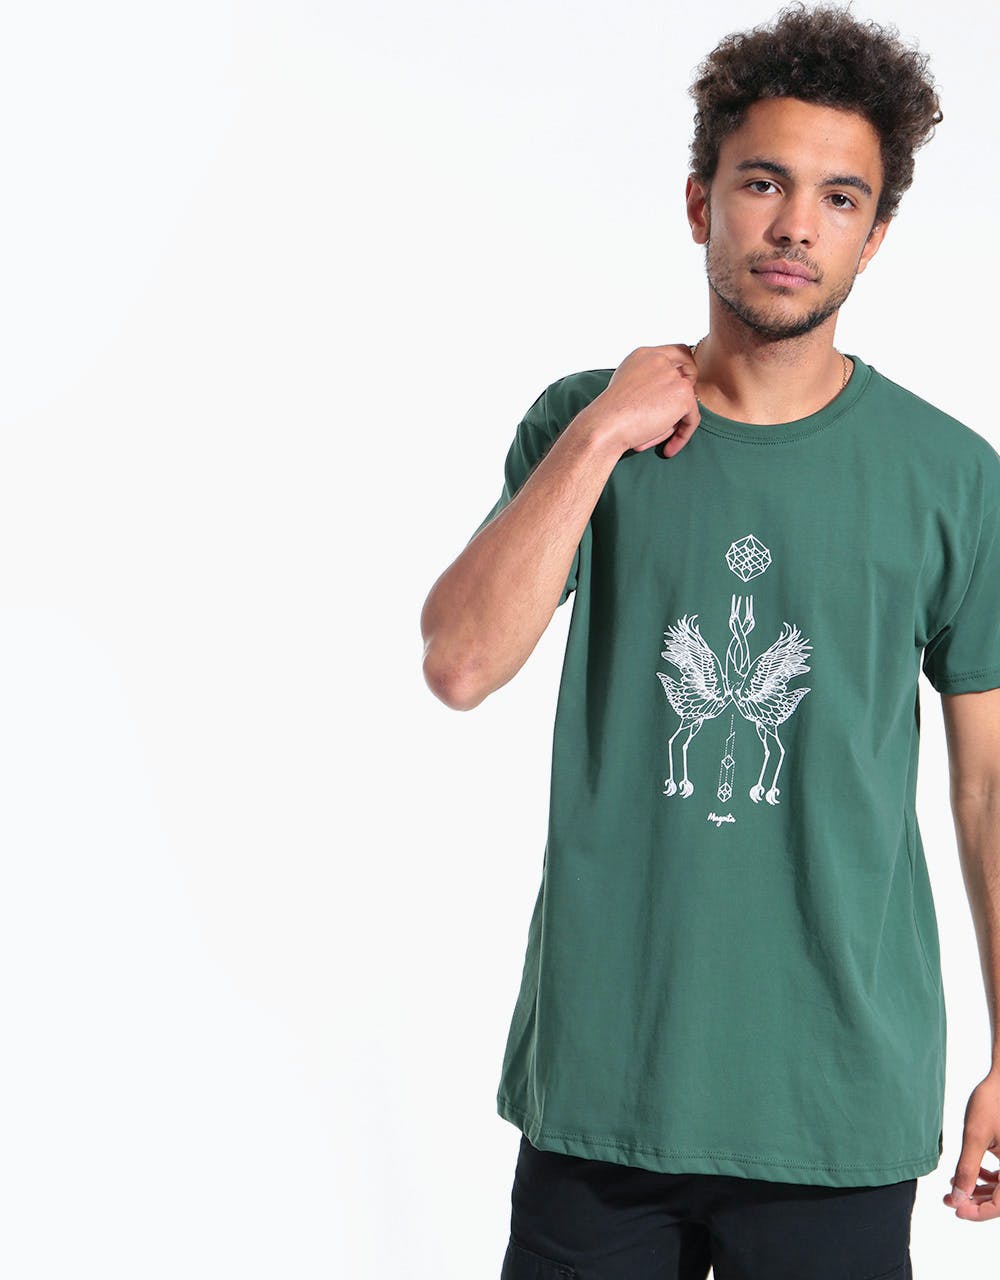 Magenta Cranes T-Shirt - Green